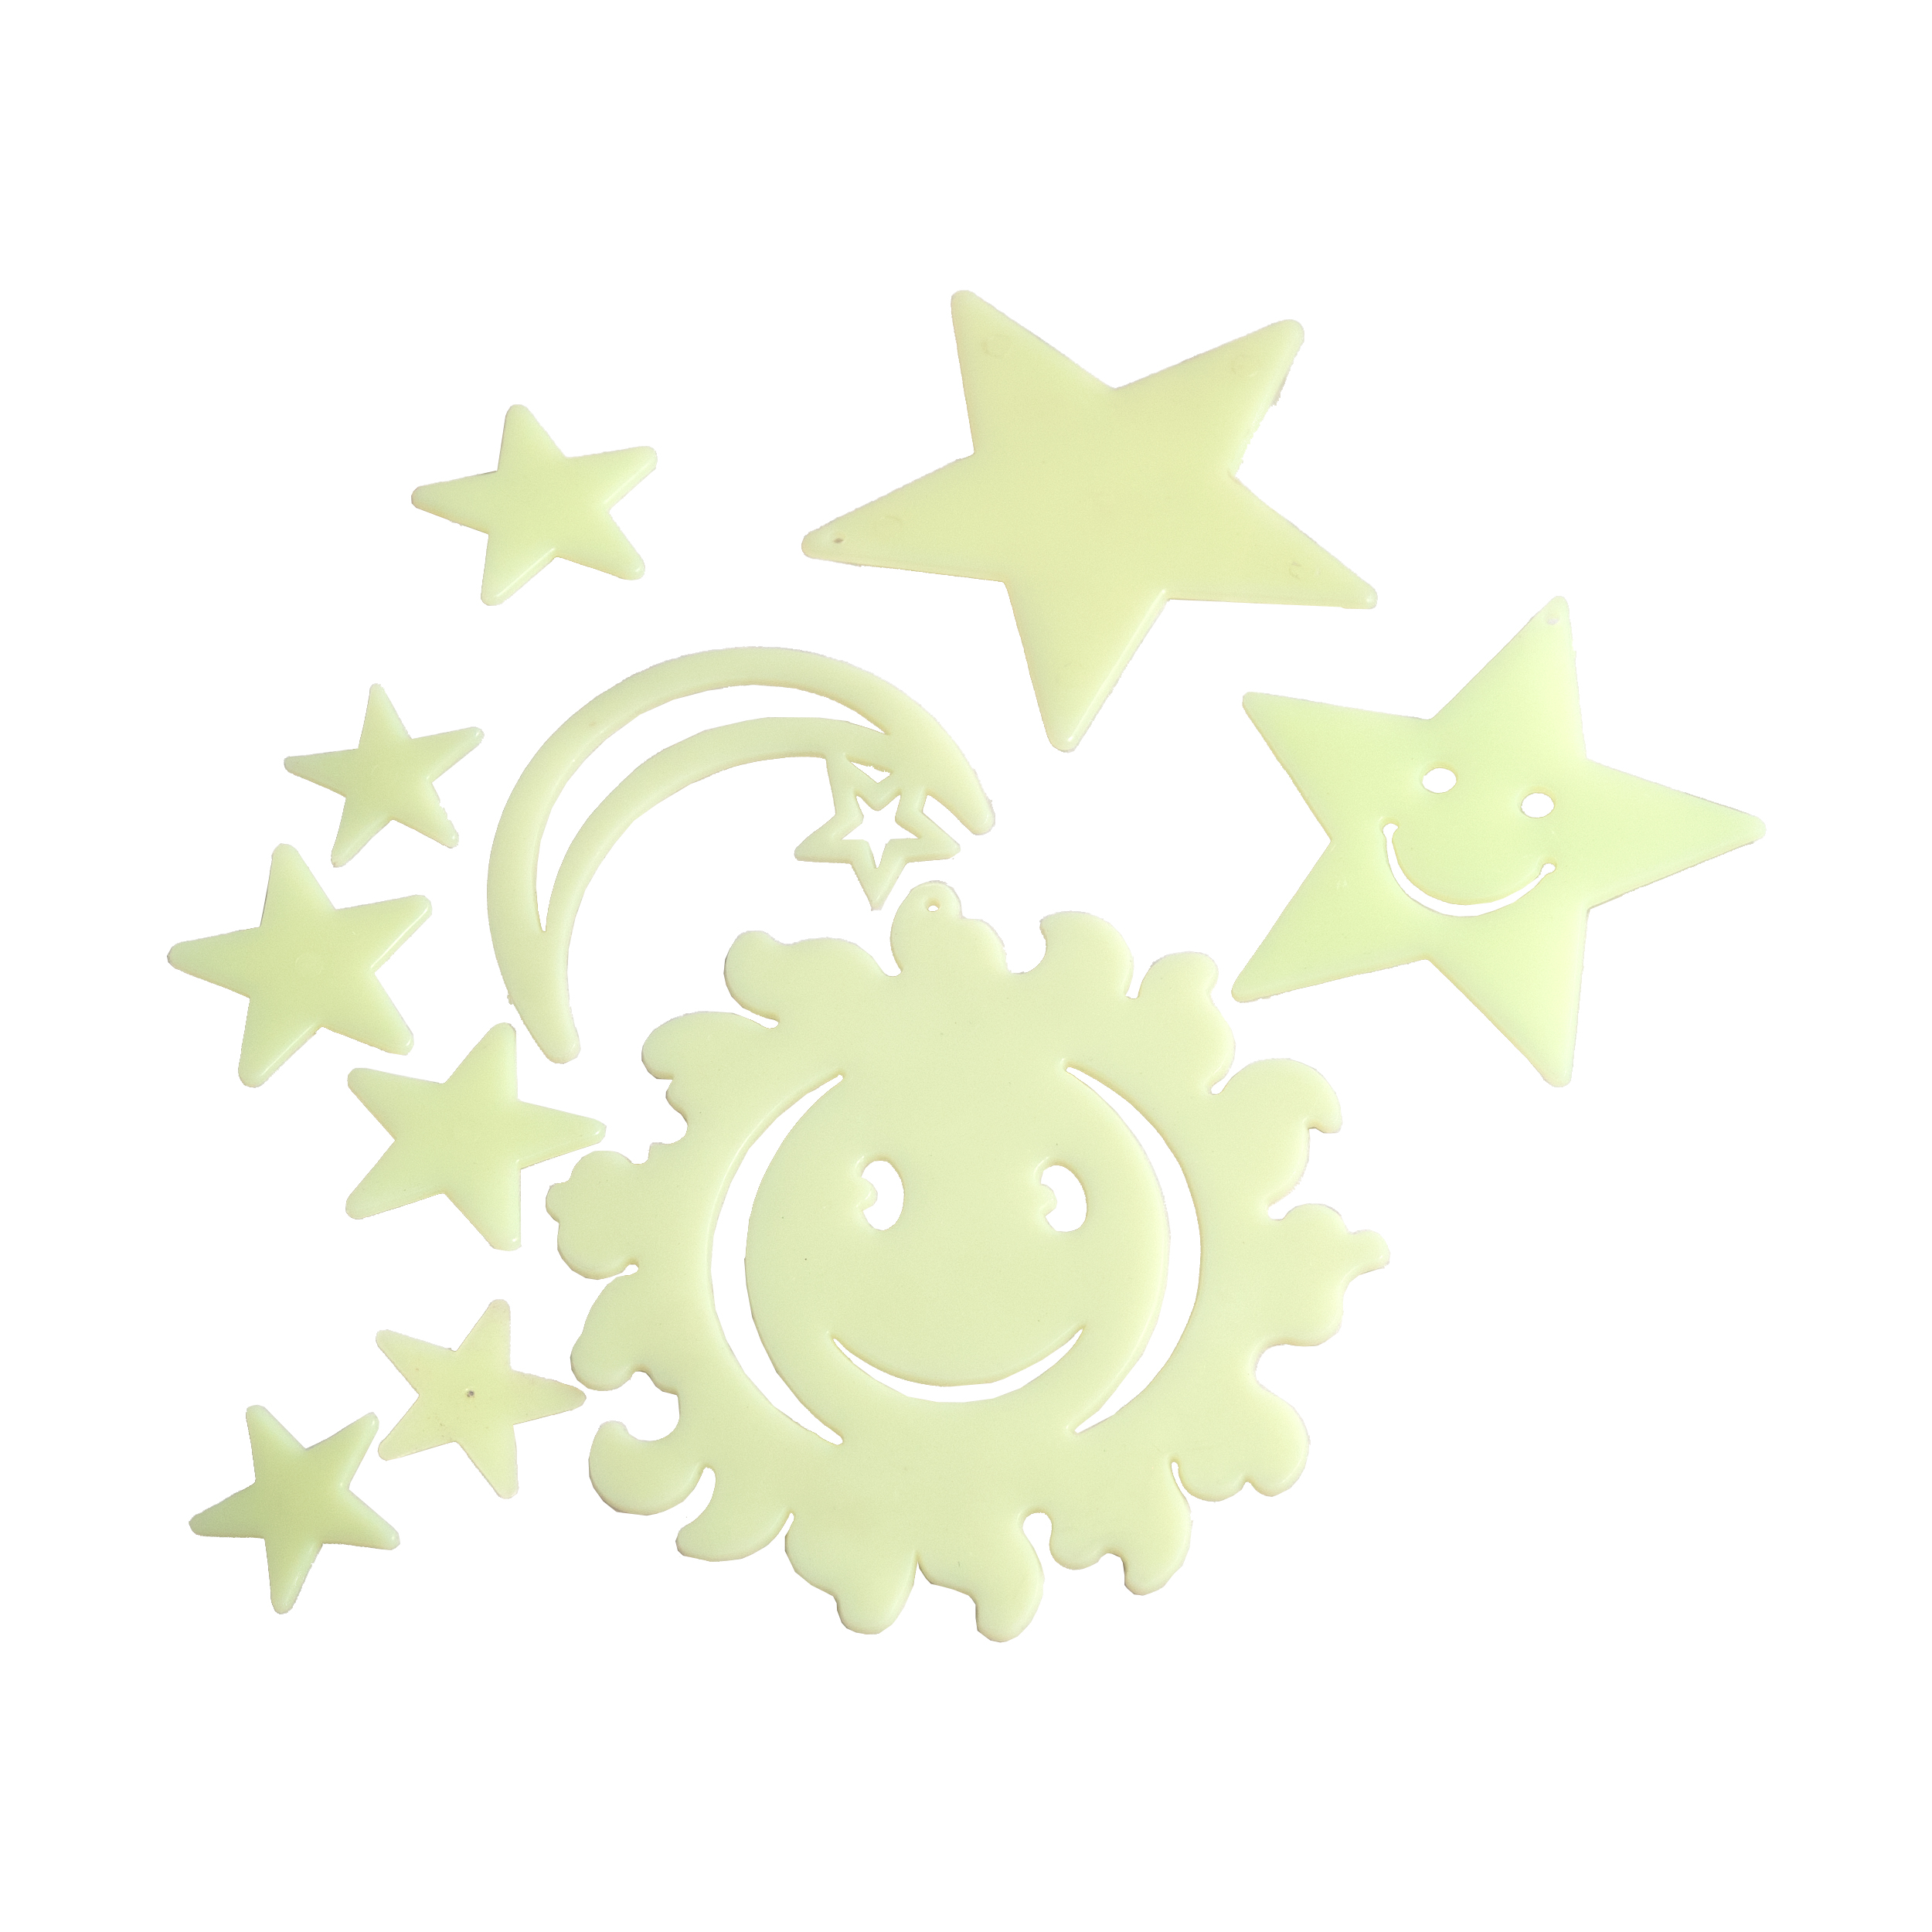 استیکر کودک کیدزپرو طرح خورشید و ماه و ستاره کد 0888 مجموعه 10 عددی